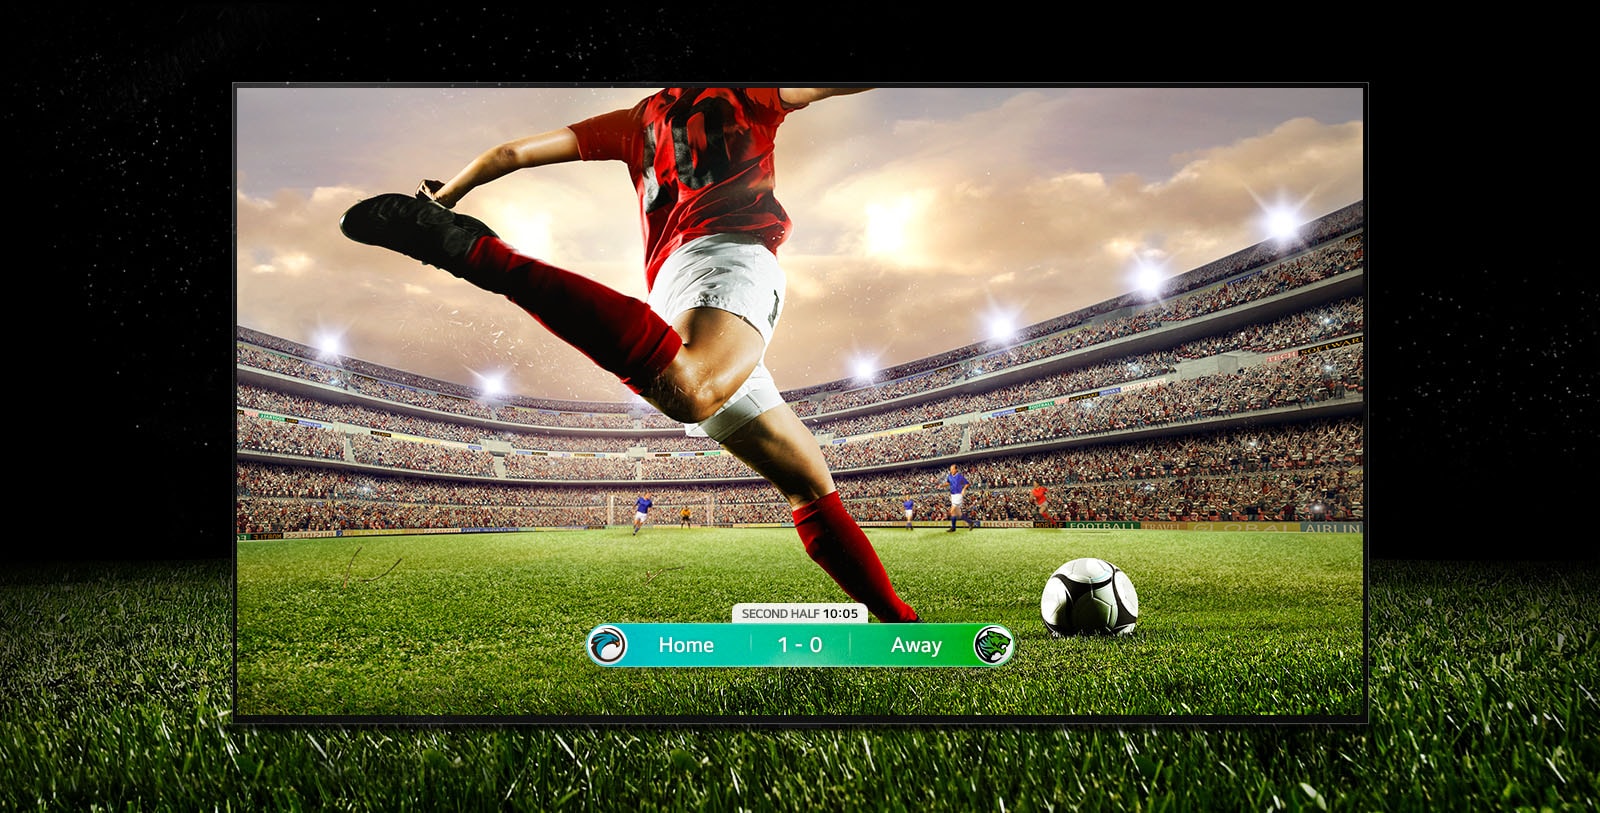 Een beeld van het display dat een voetbalwedstrijd toont met een speler in een rode band die op het punt staat de bal te spelen. De wedstrijdscore is zichtbaar onderaan het scherm. Het groene gras van het veld strekt zich buiten het scherm uit tot de zwarte achtergrond.